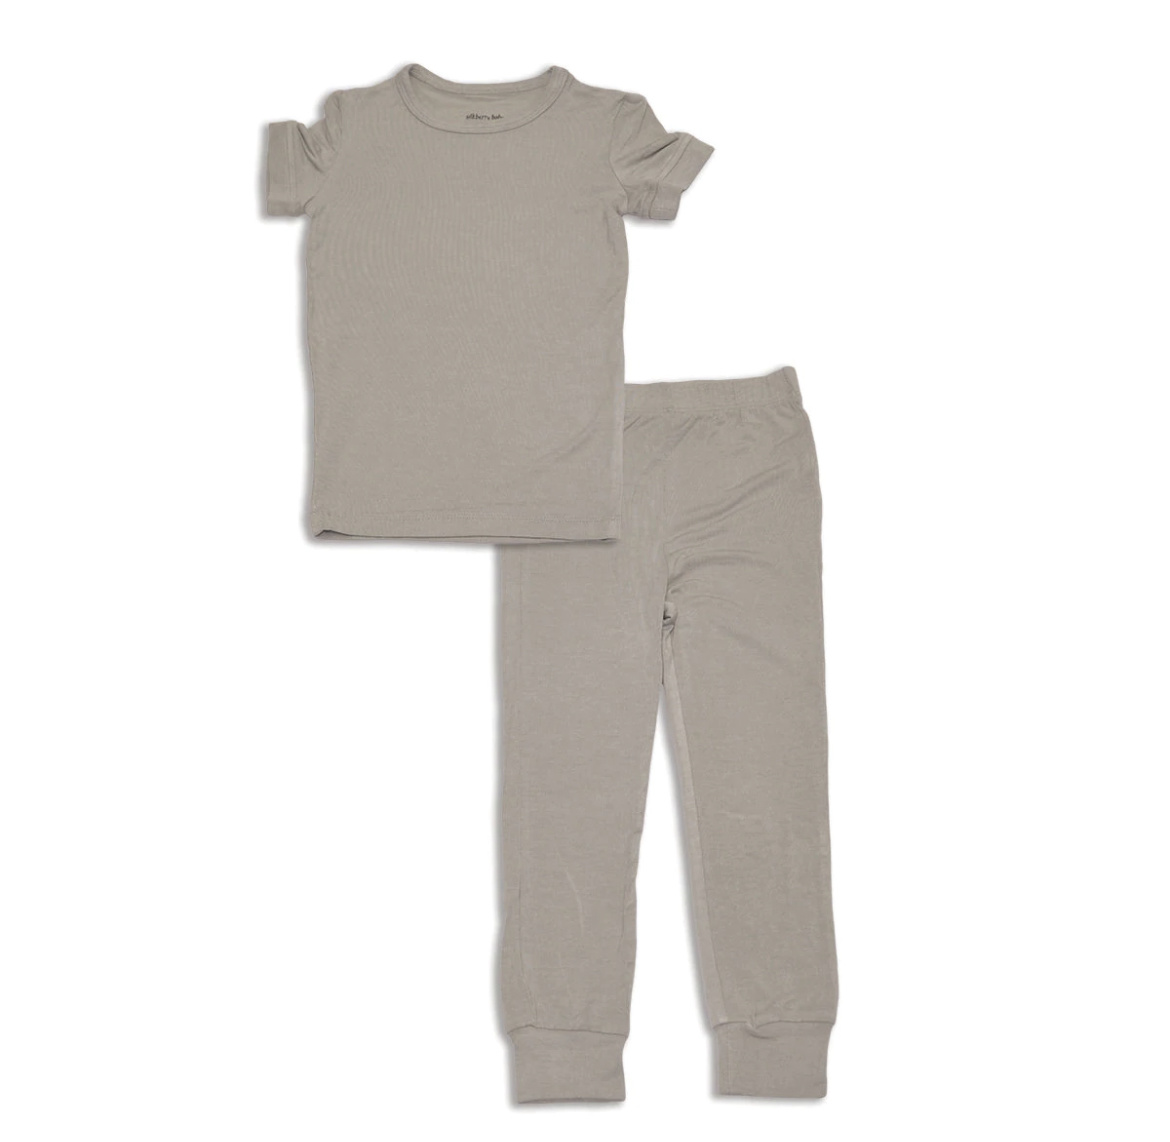 Silkberry Baby Bamboo Short Sleeve 2pc Pajama Set (Porpoise)